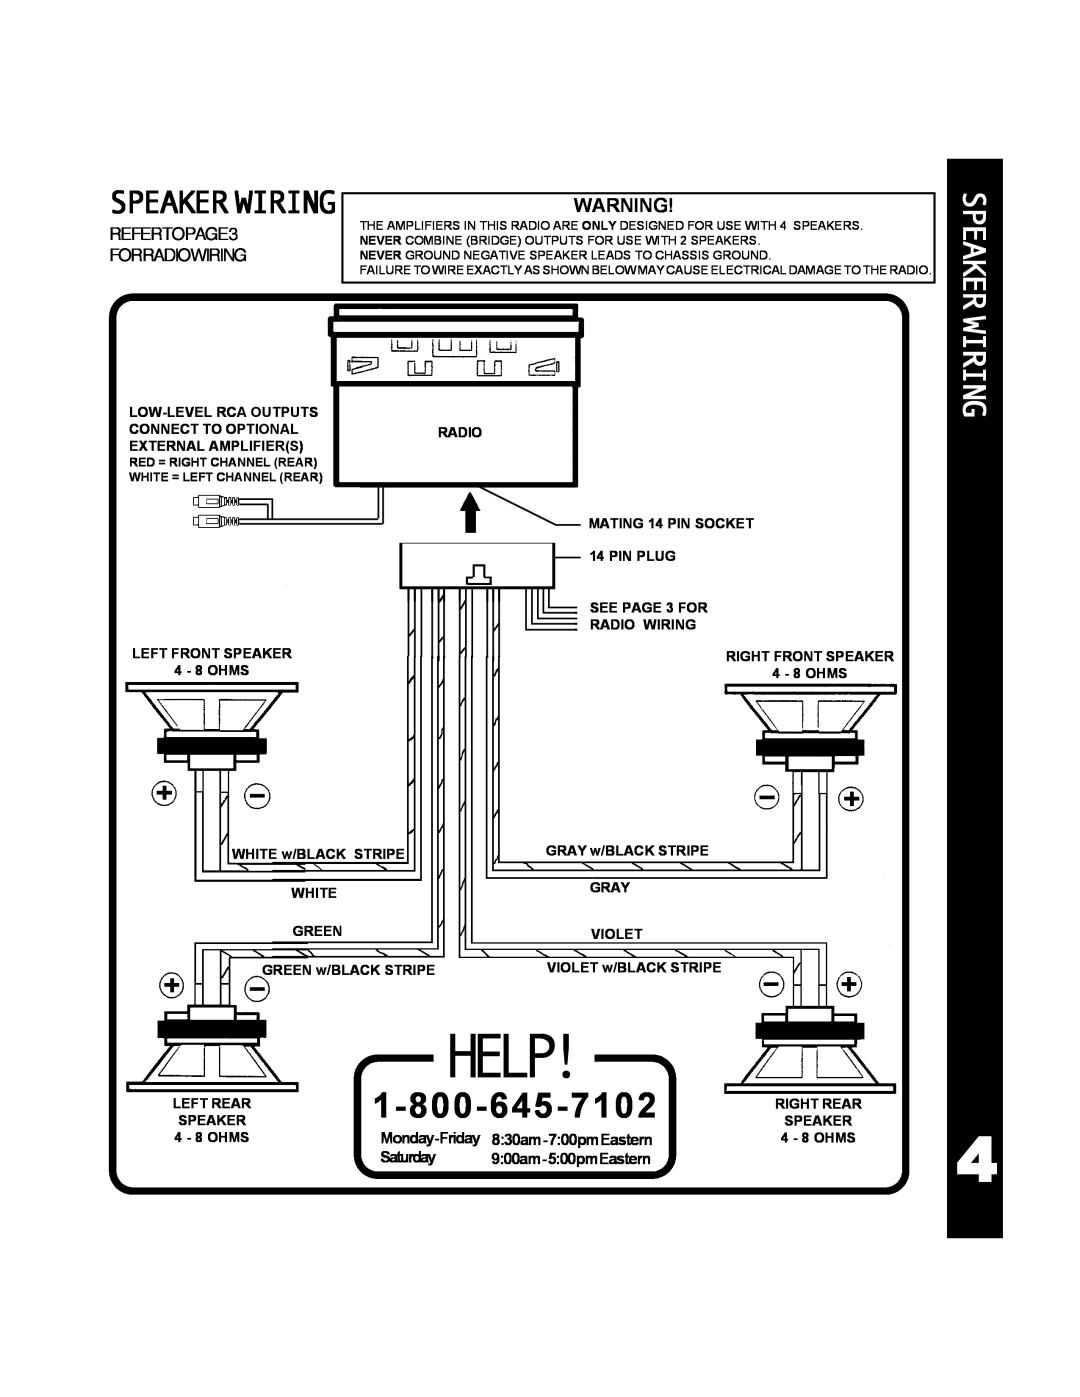 Audiovox ACD-25 manual Help, Speakerwiringwarning, Speaker Wiring 